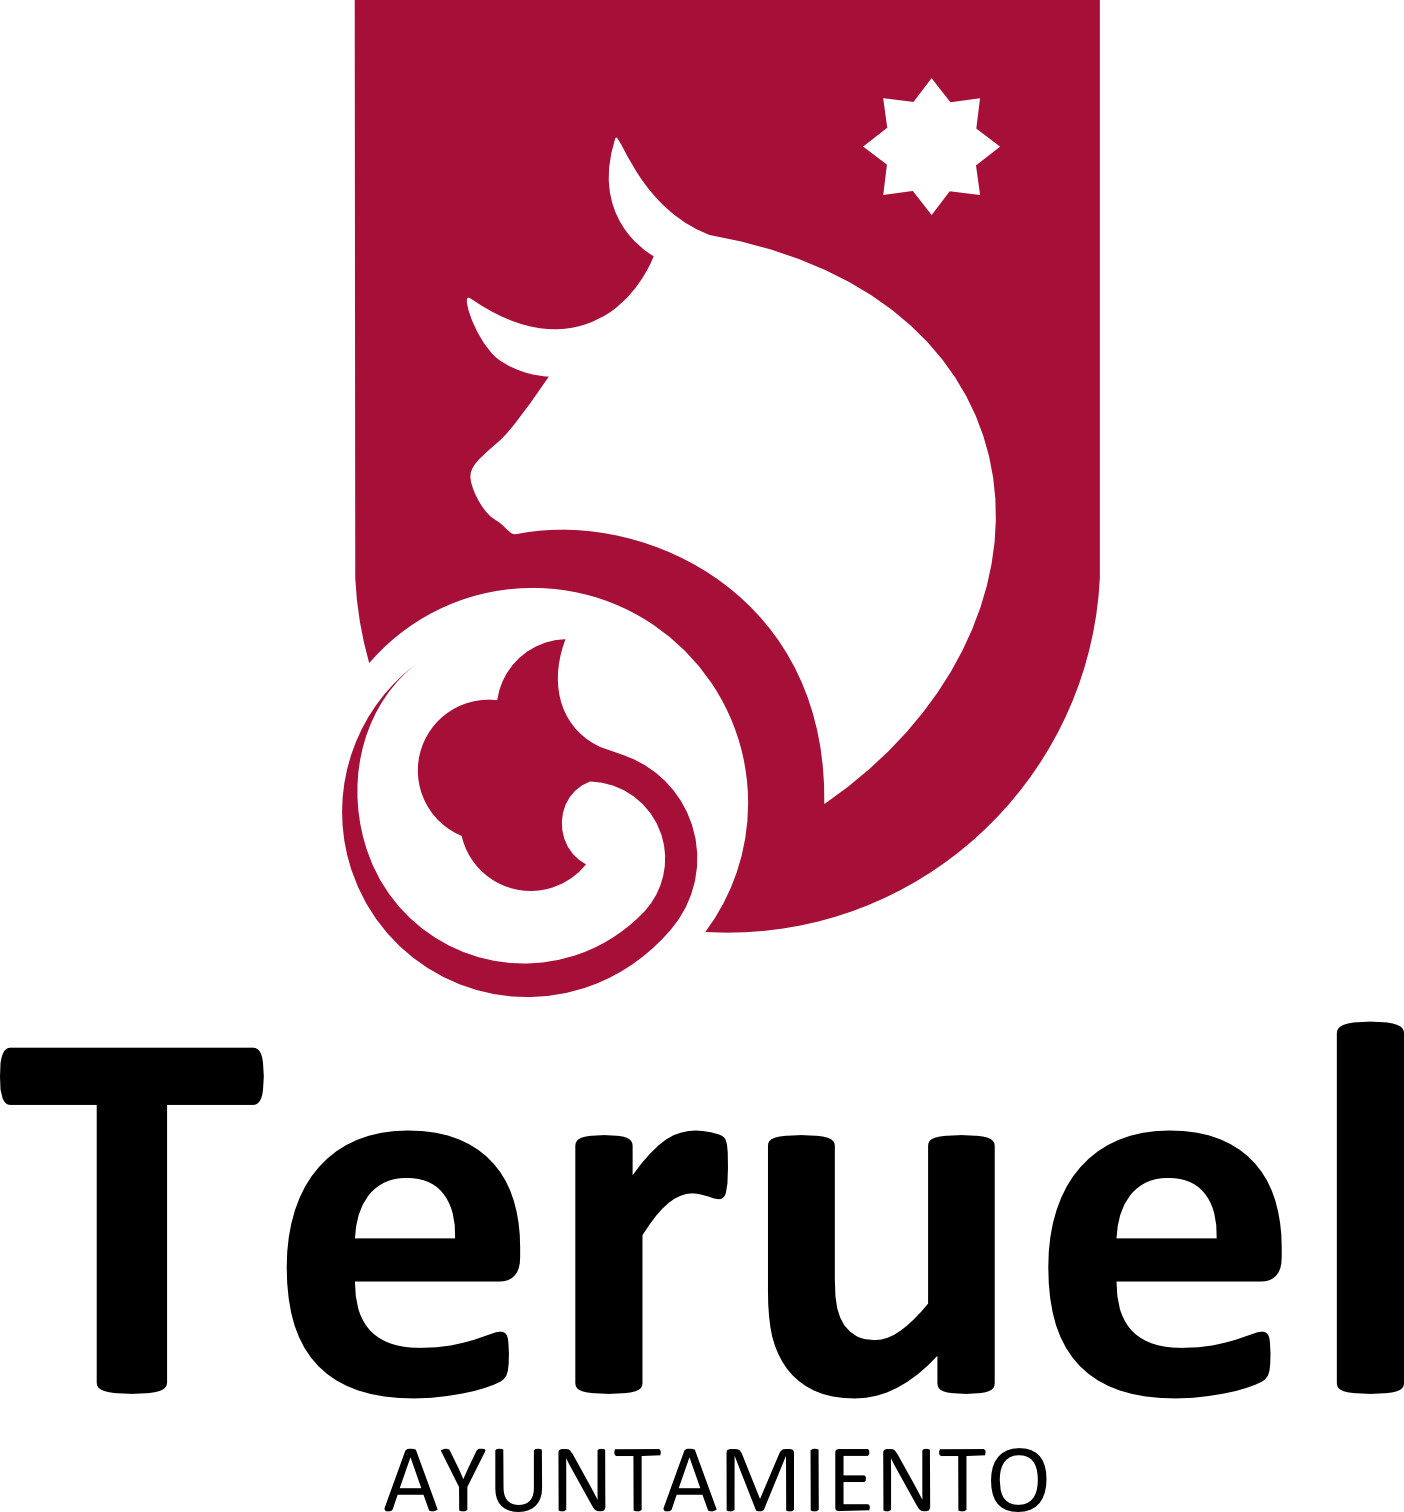 El Ayuntamiento de Teruel aprueba el nuevo reglamento del Consejo de Desarrollo Local
